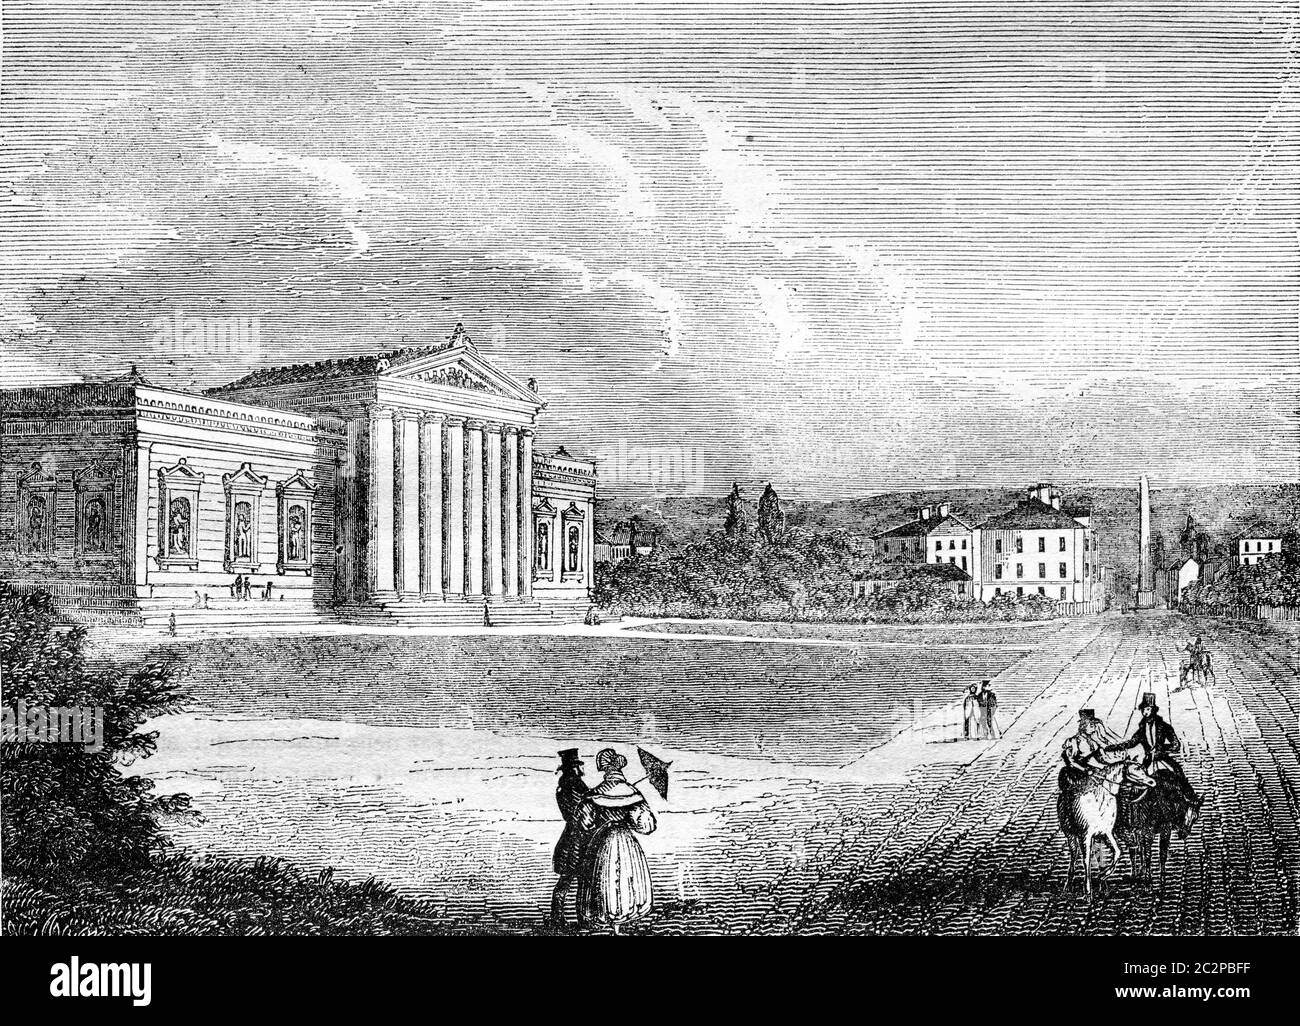 Le Glyptothek, musée de la sculpture, à Munich, illustration gravée d'époque. Magasin Pittoresque 1836. Banque D'Images